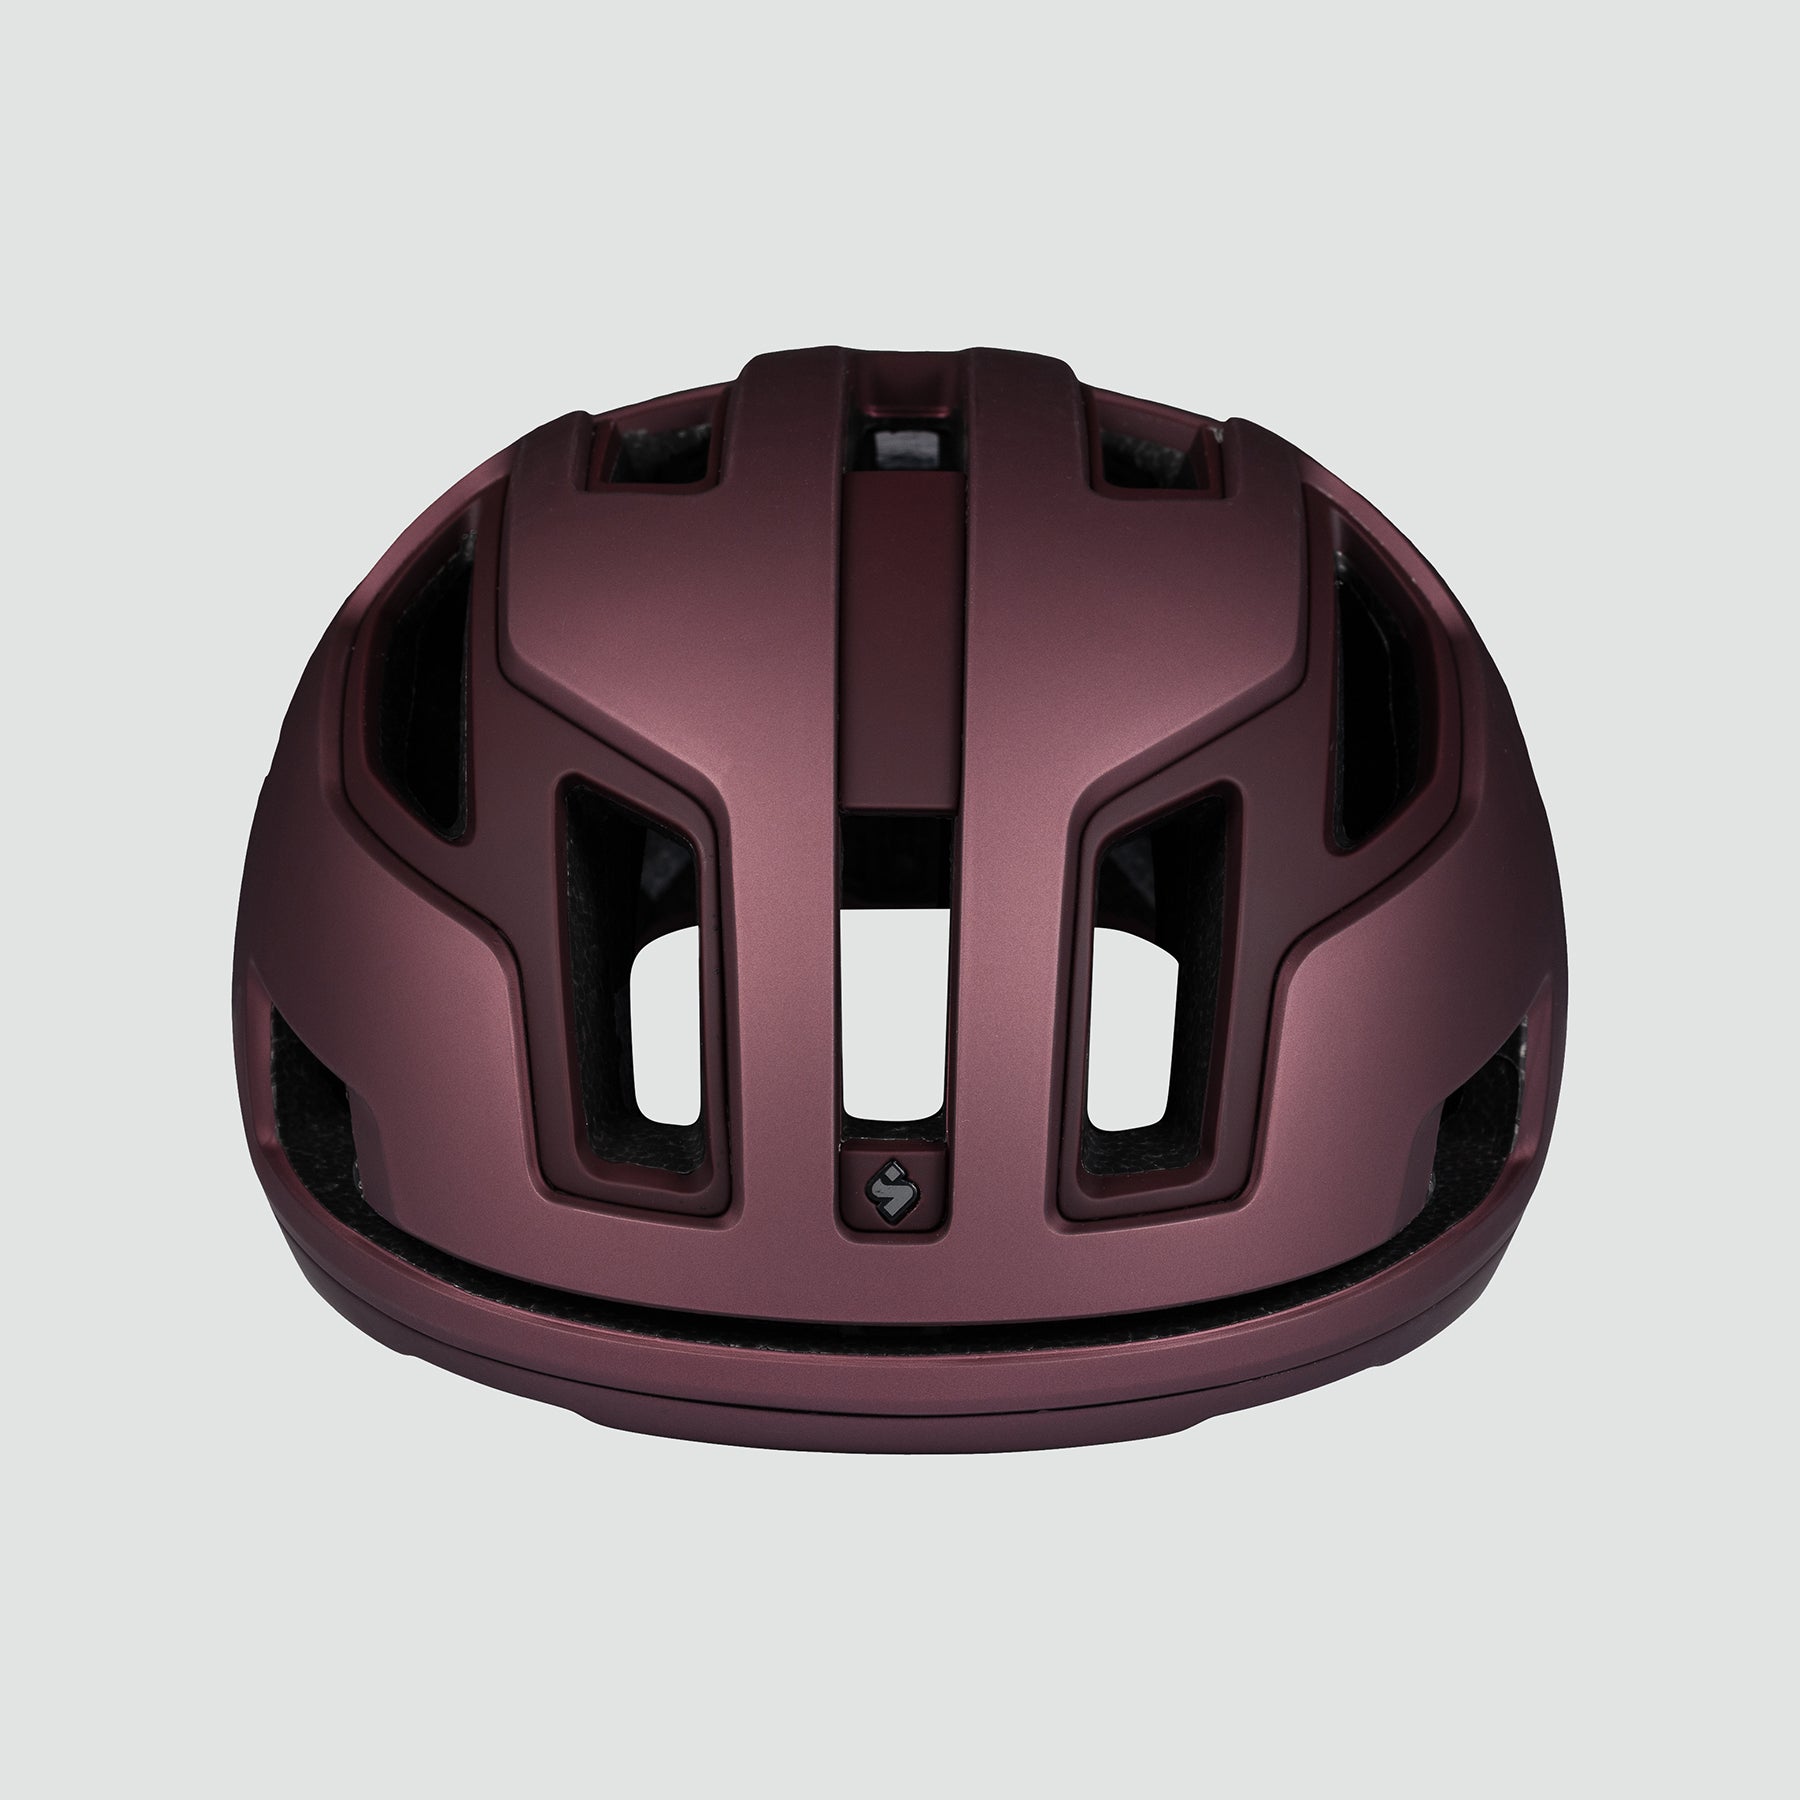 Falconer 2Vi Mips Helmet - Barbera Metallic